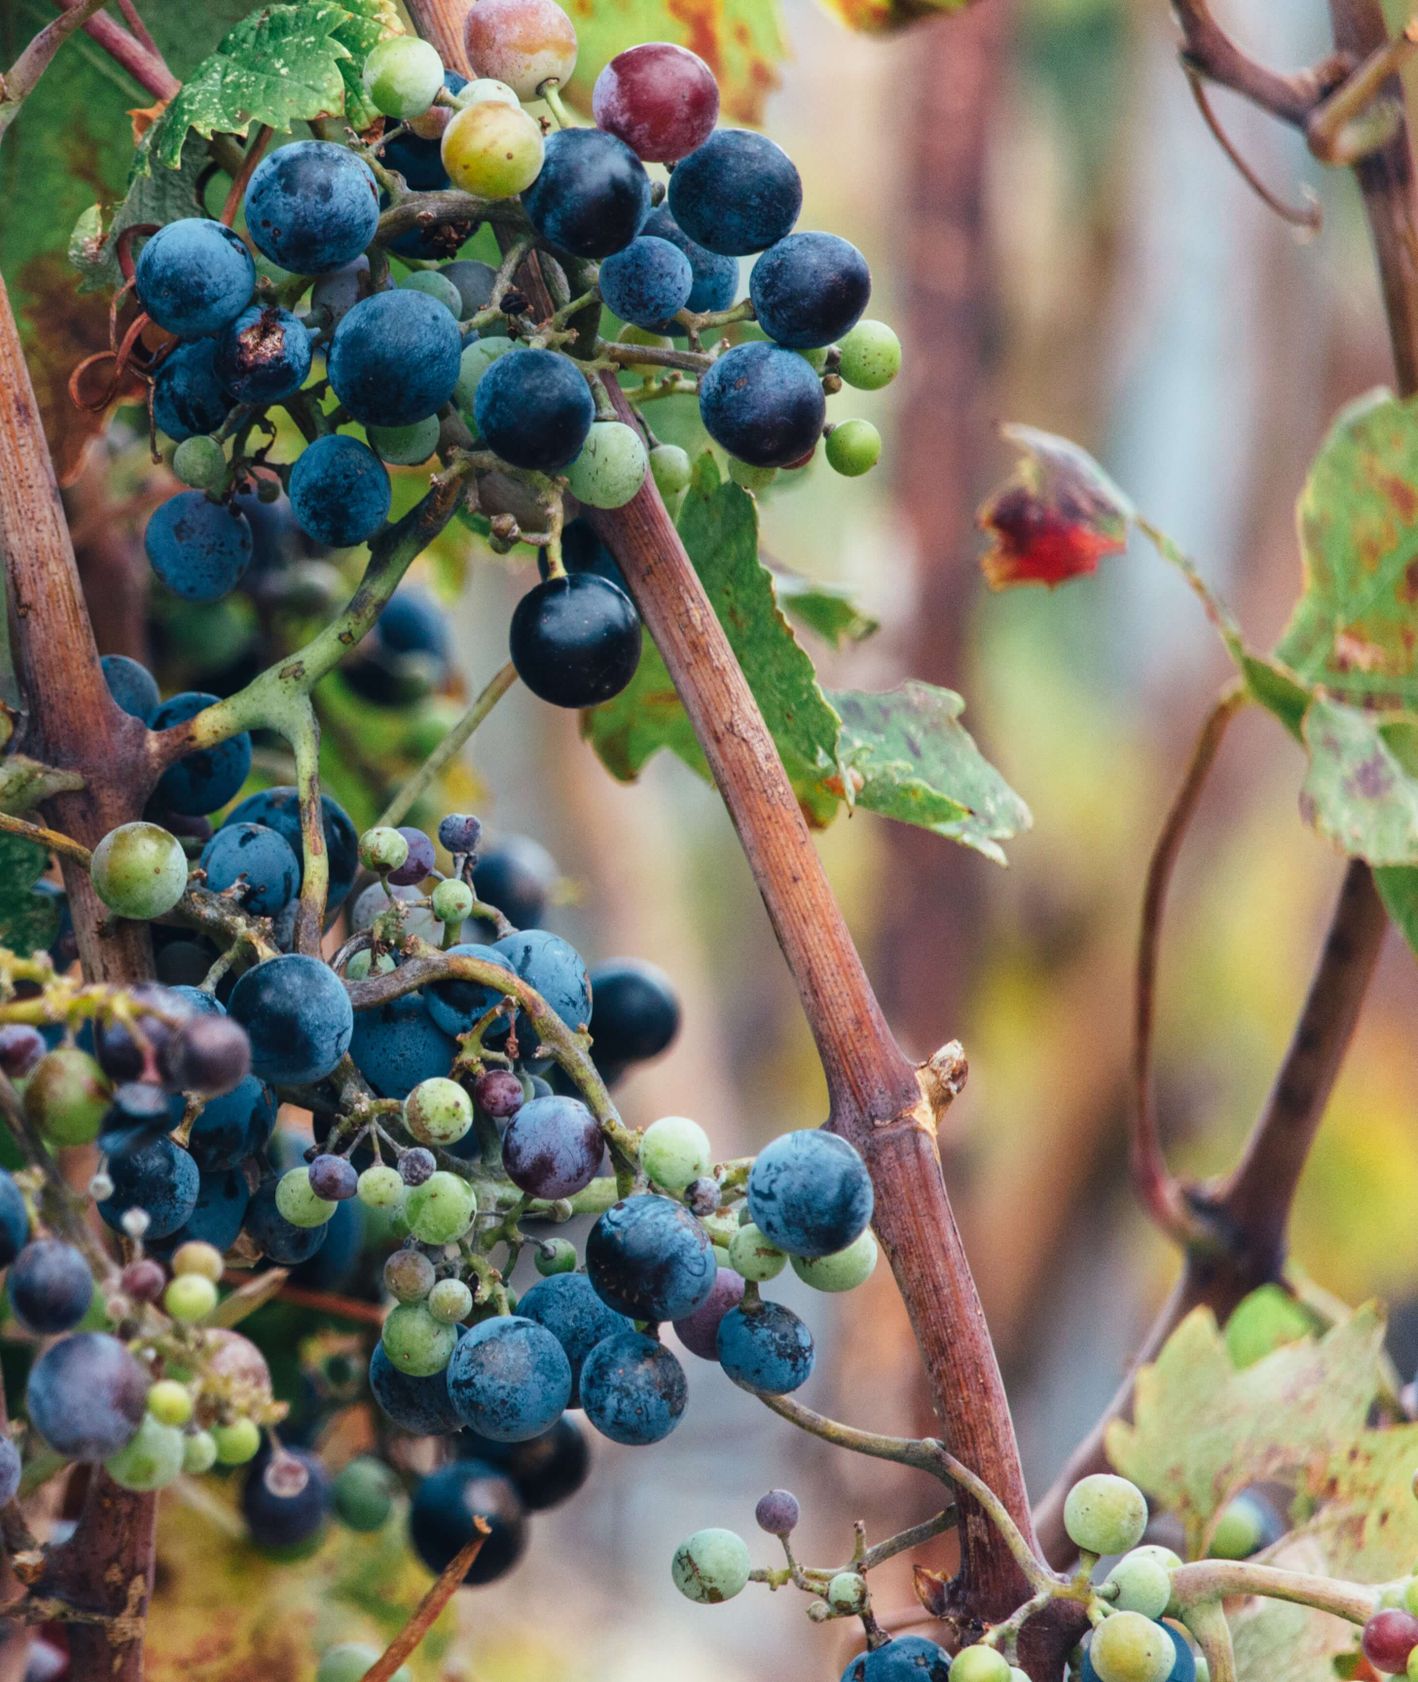 Dojrzewające owoce winogrona (fot. Alex Holyoake)